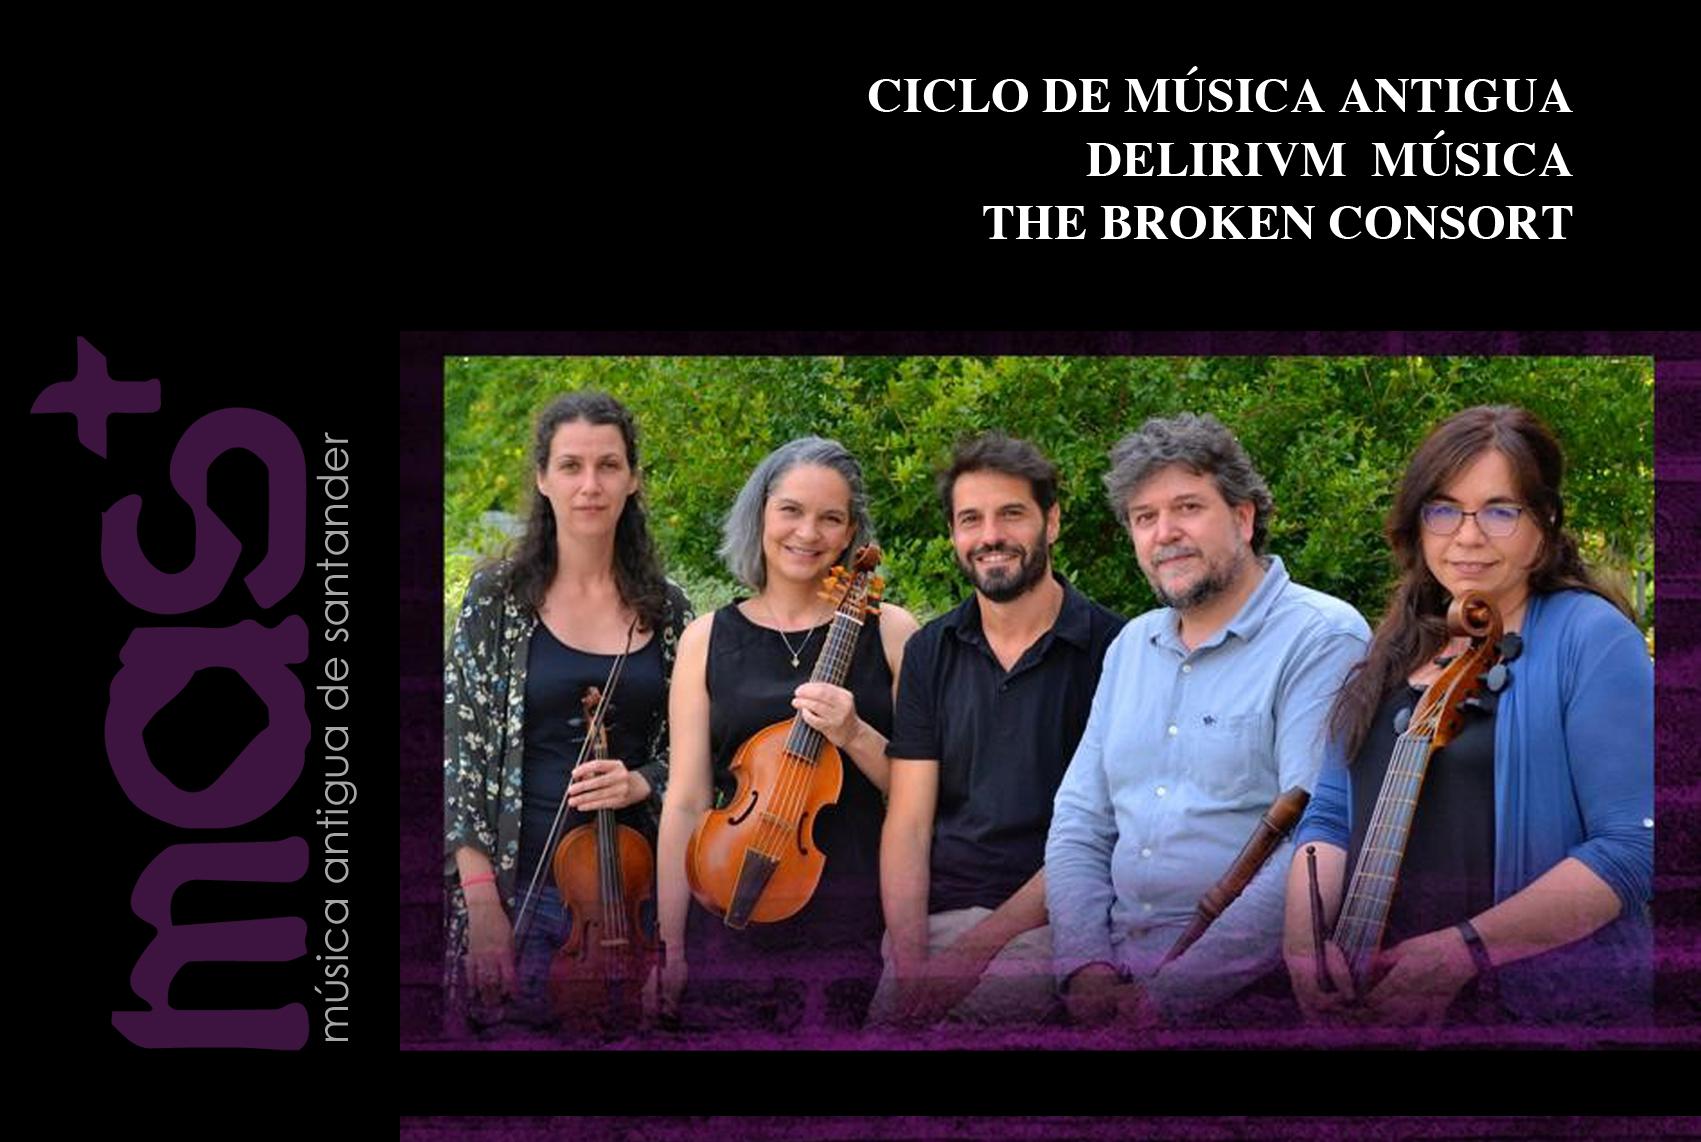 Concierto, “The Broken Consort”. Delirivm Música, Música Antigua de Santander